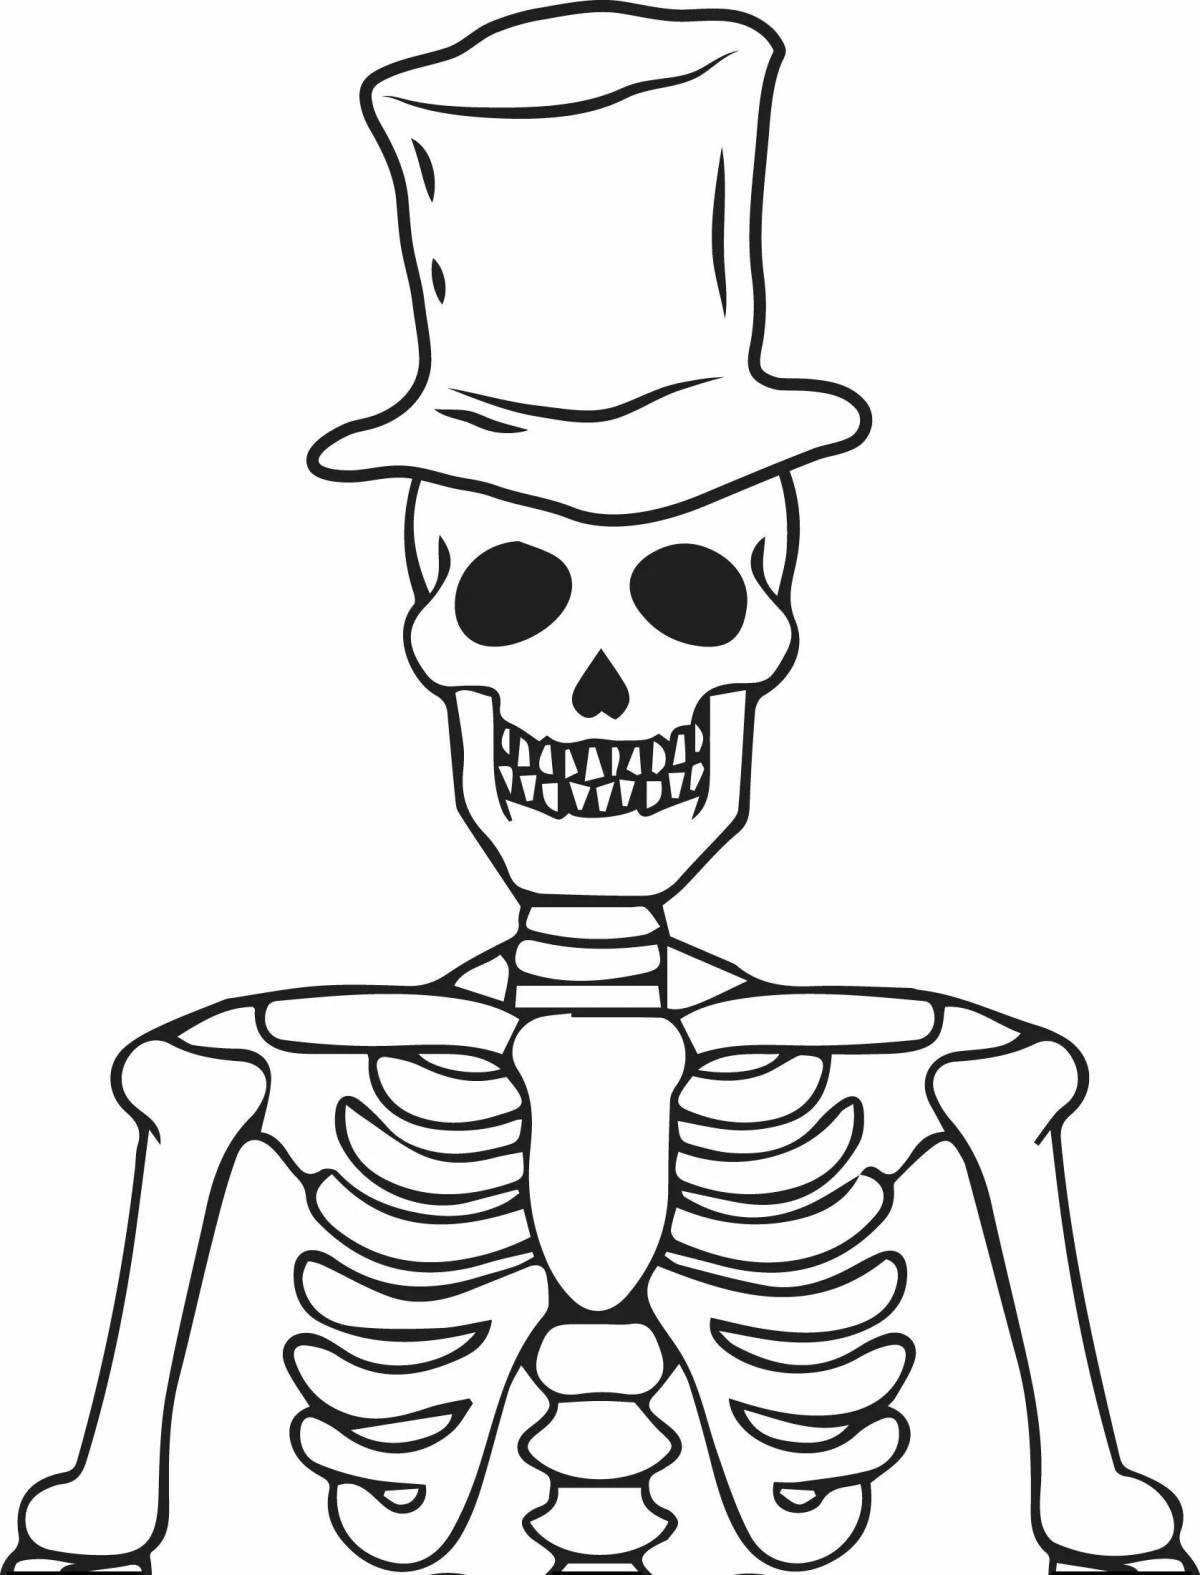 Shocking skeleton coloring page